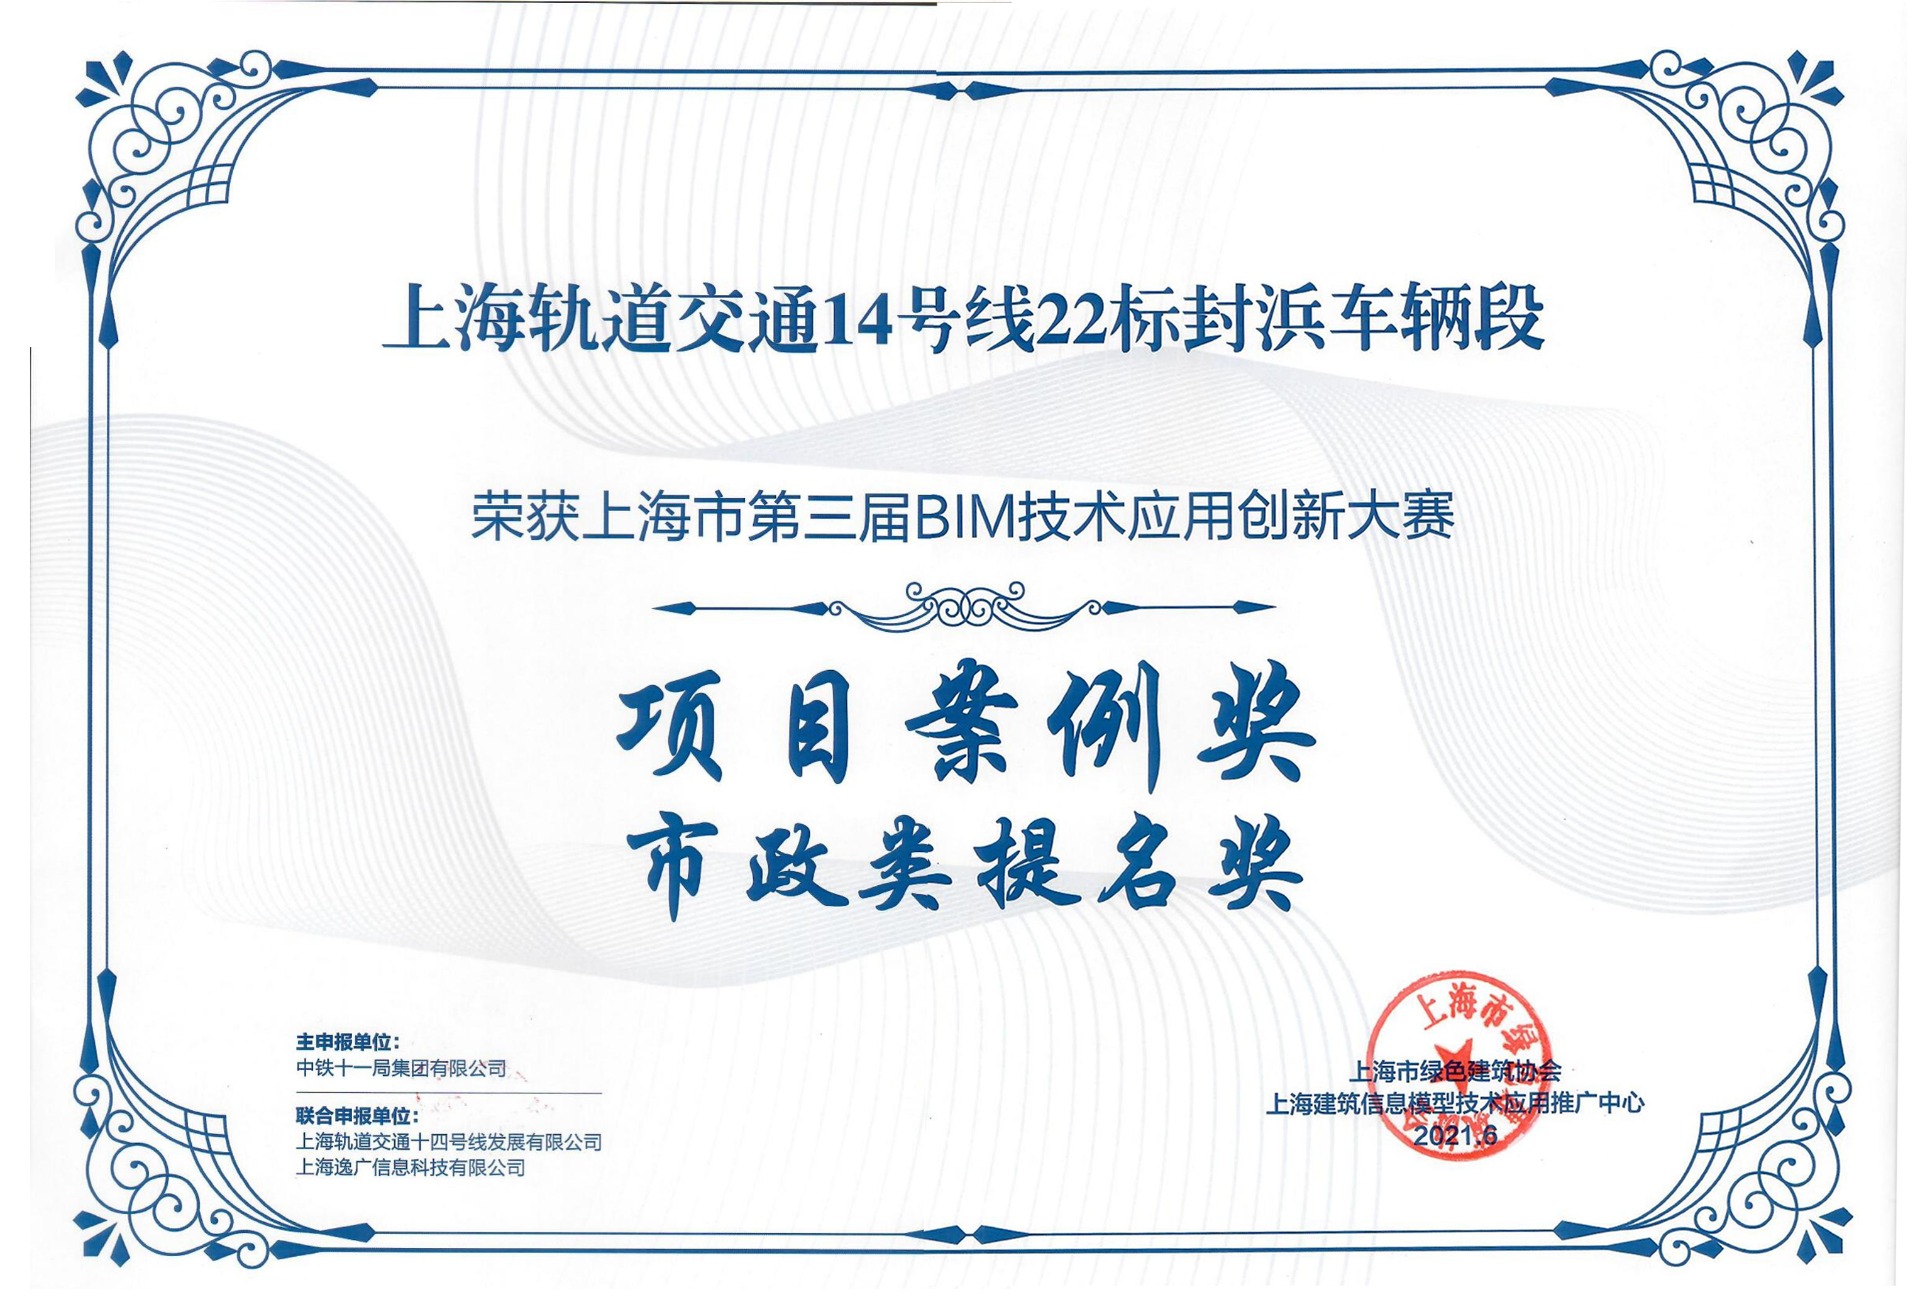 圭土云荣获上海市第三届BIM应用技术创新大赛项目案例奖！